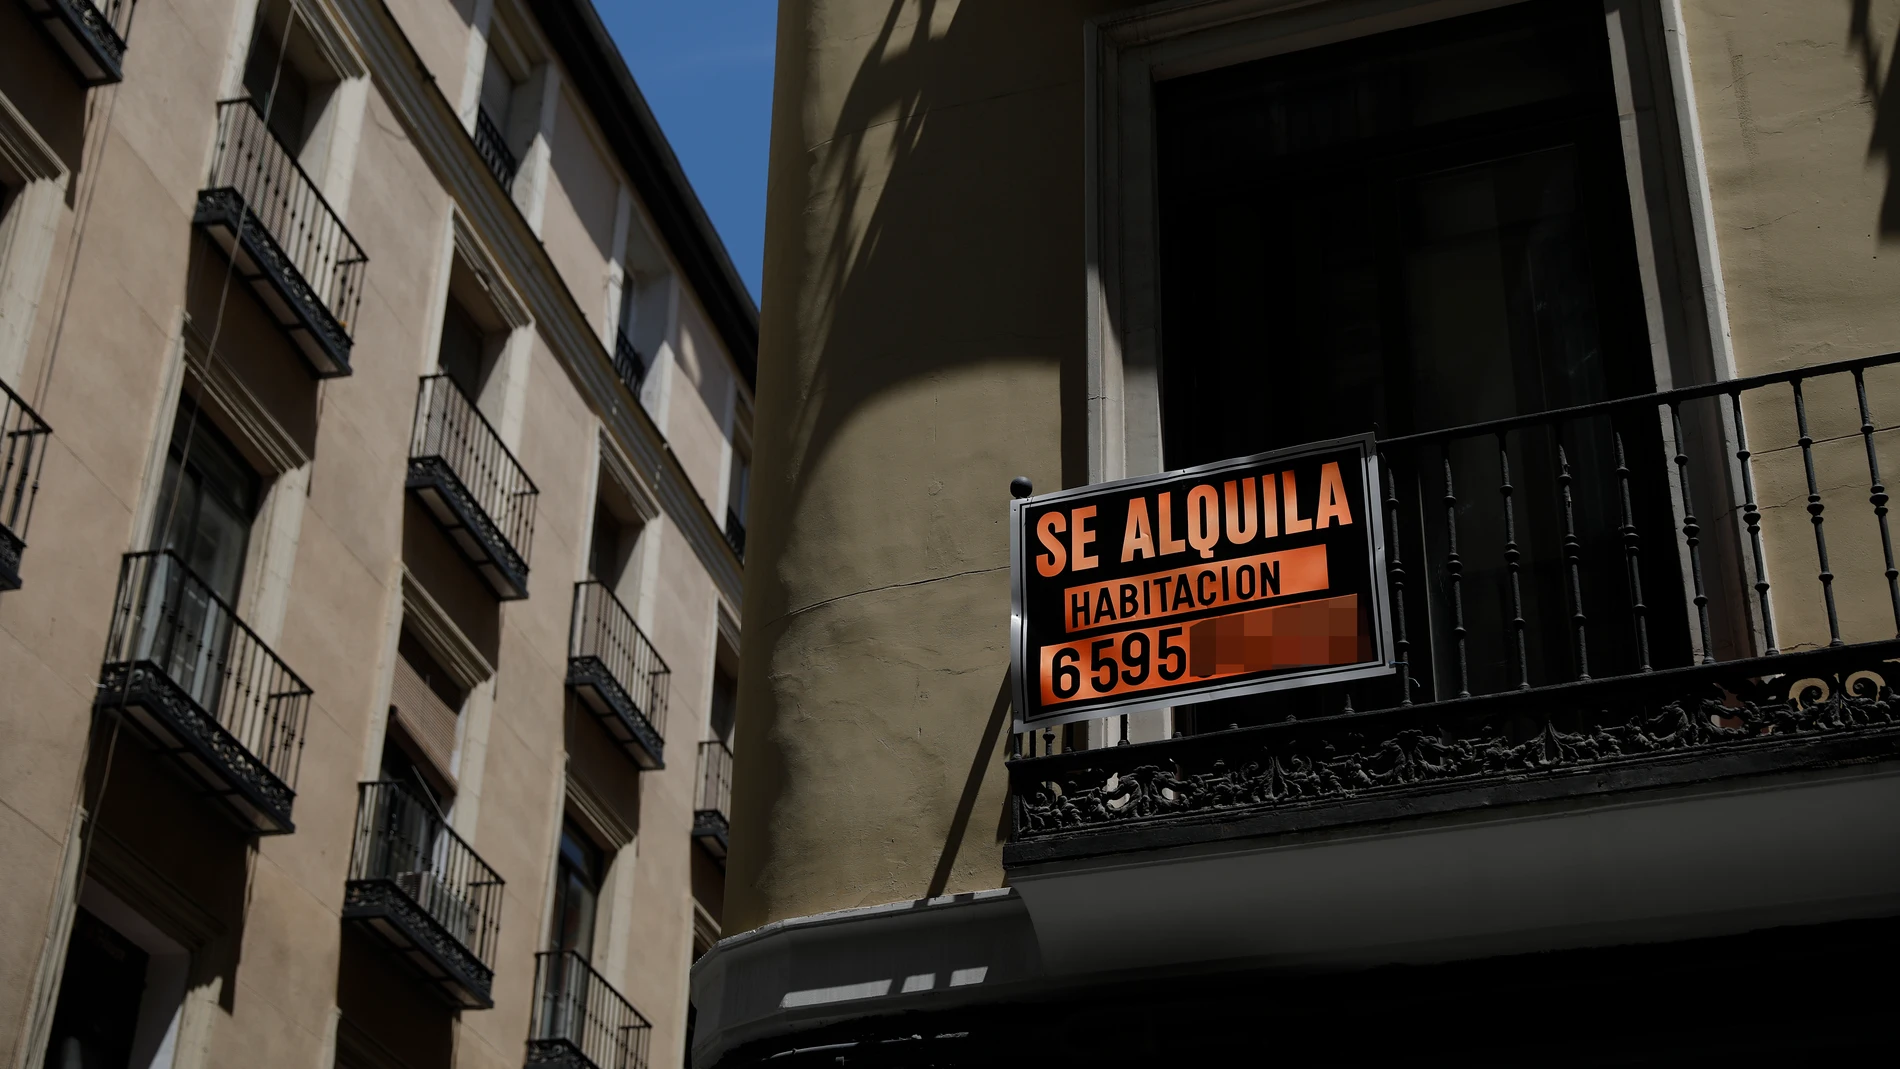 Imagen de un balcon en el barrio de Chueca en el que se anuncia el alquiler de una habitacion.